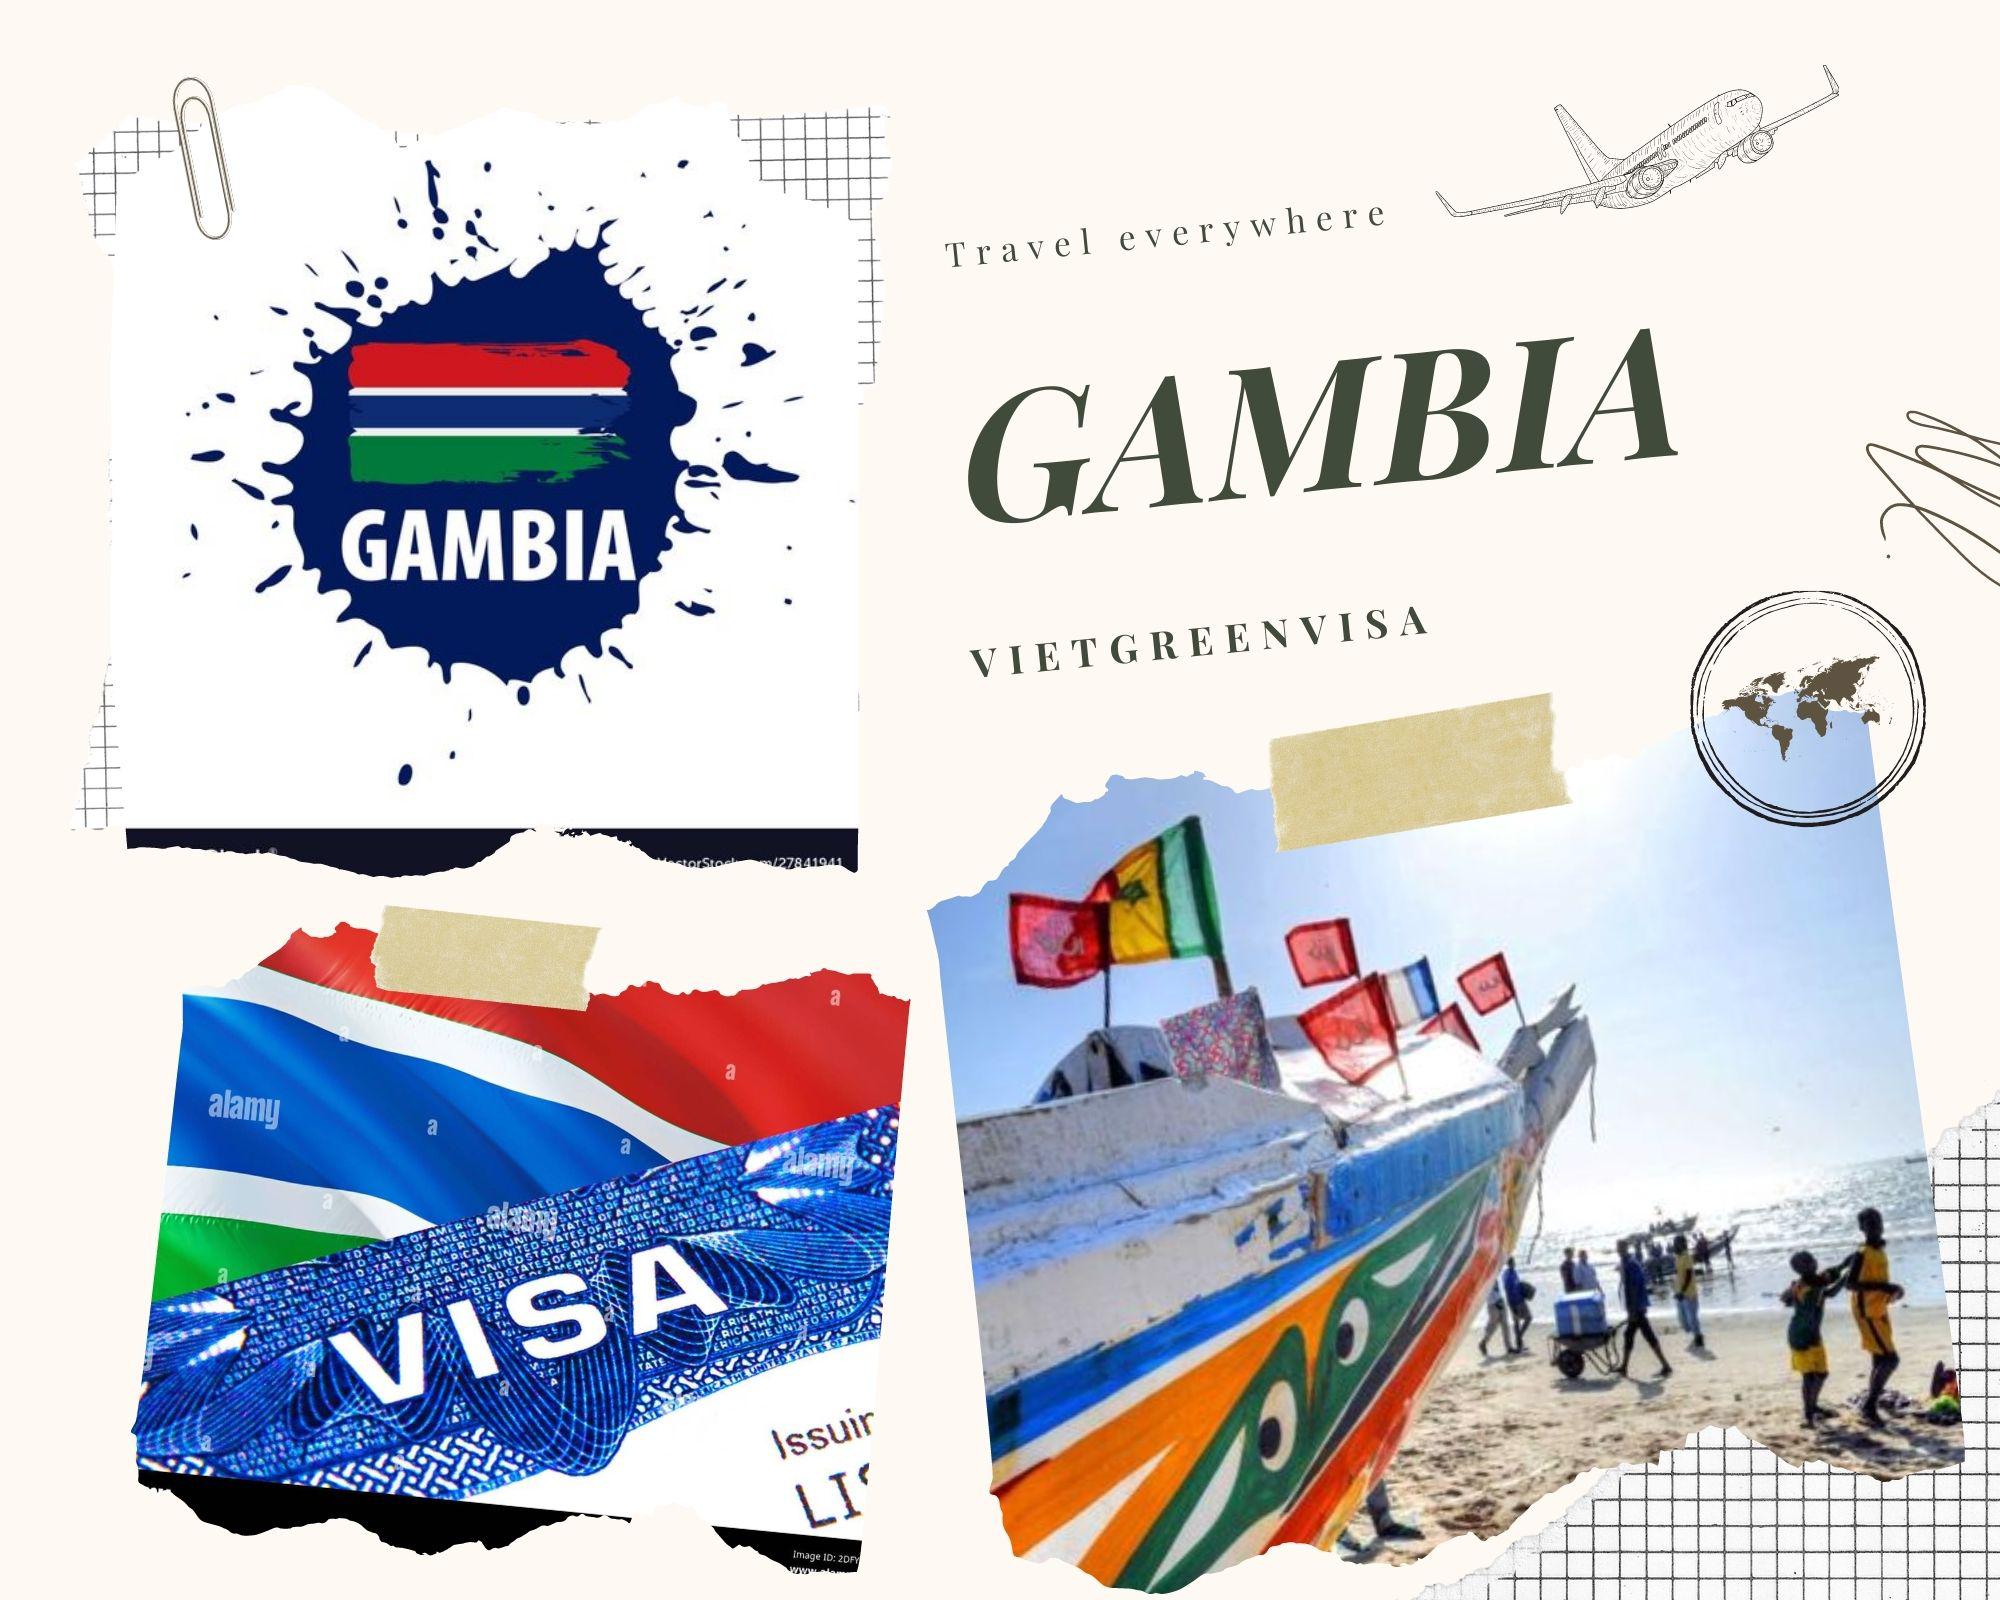 Hướng dẫn xin visa công tác Gambia trọn gói